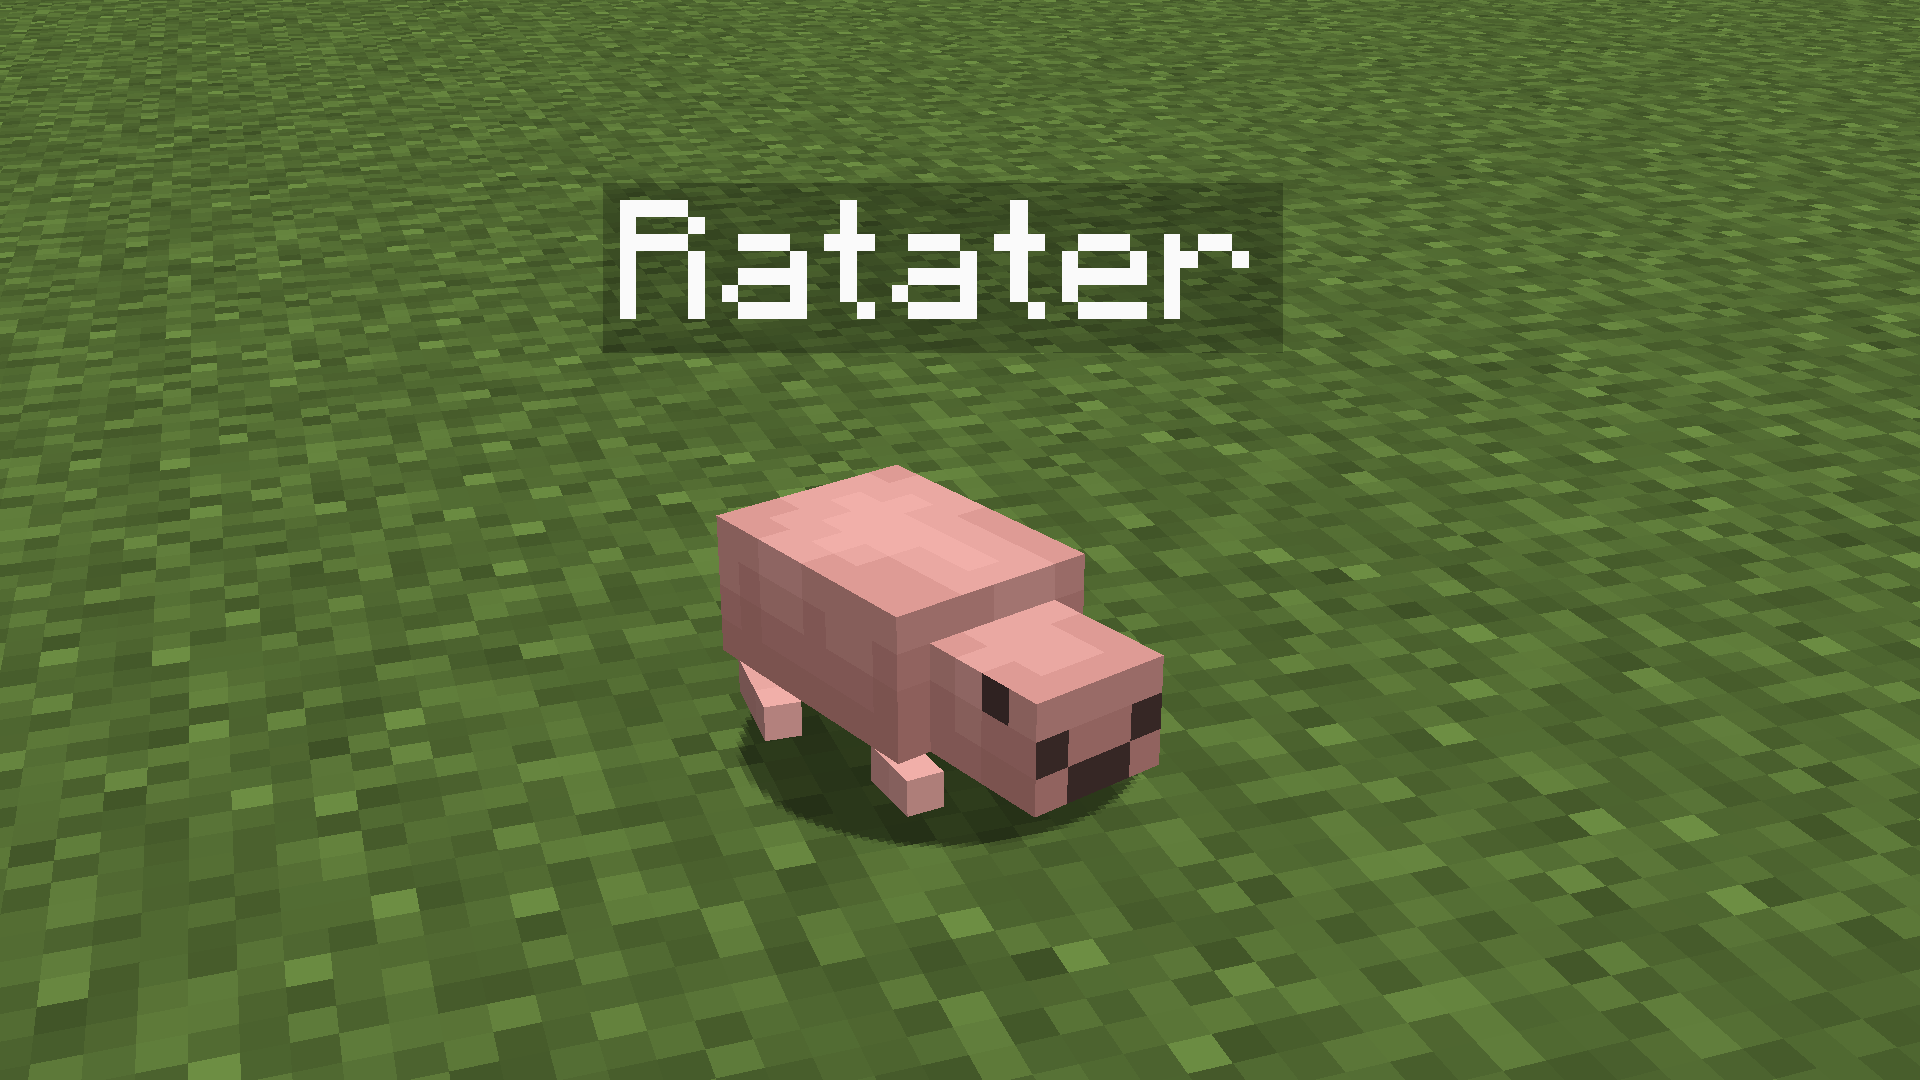 Ratater